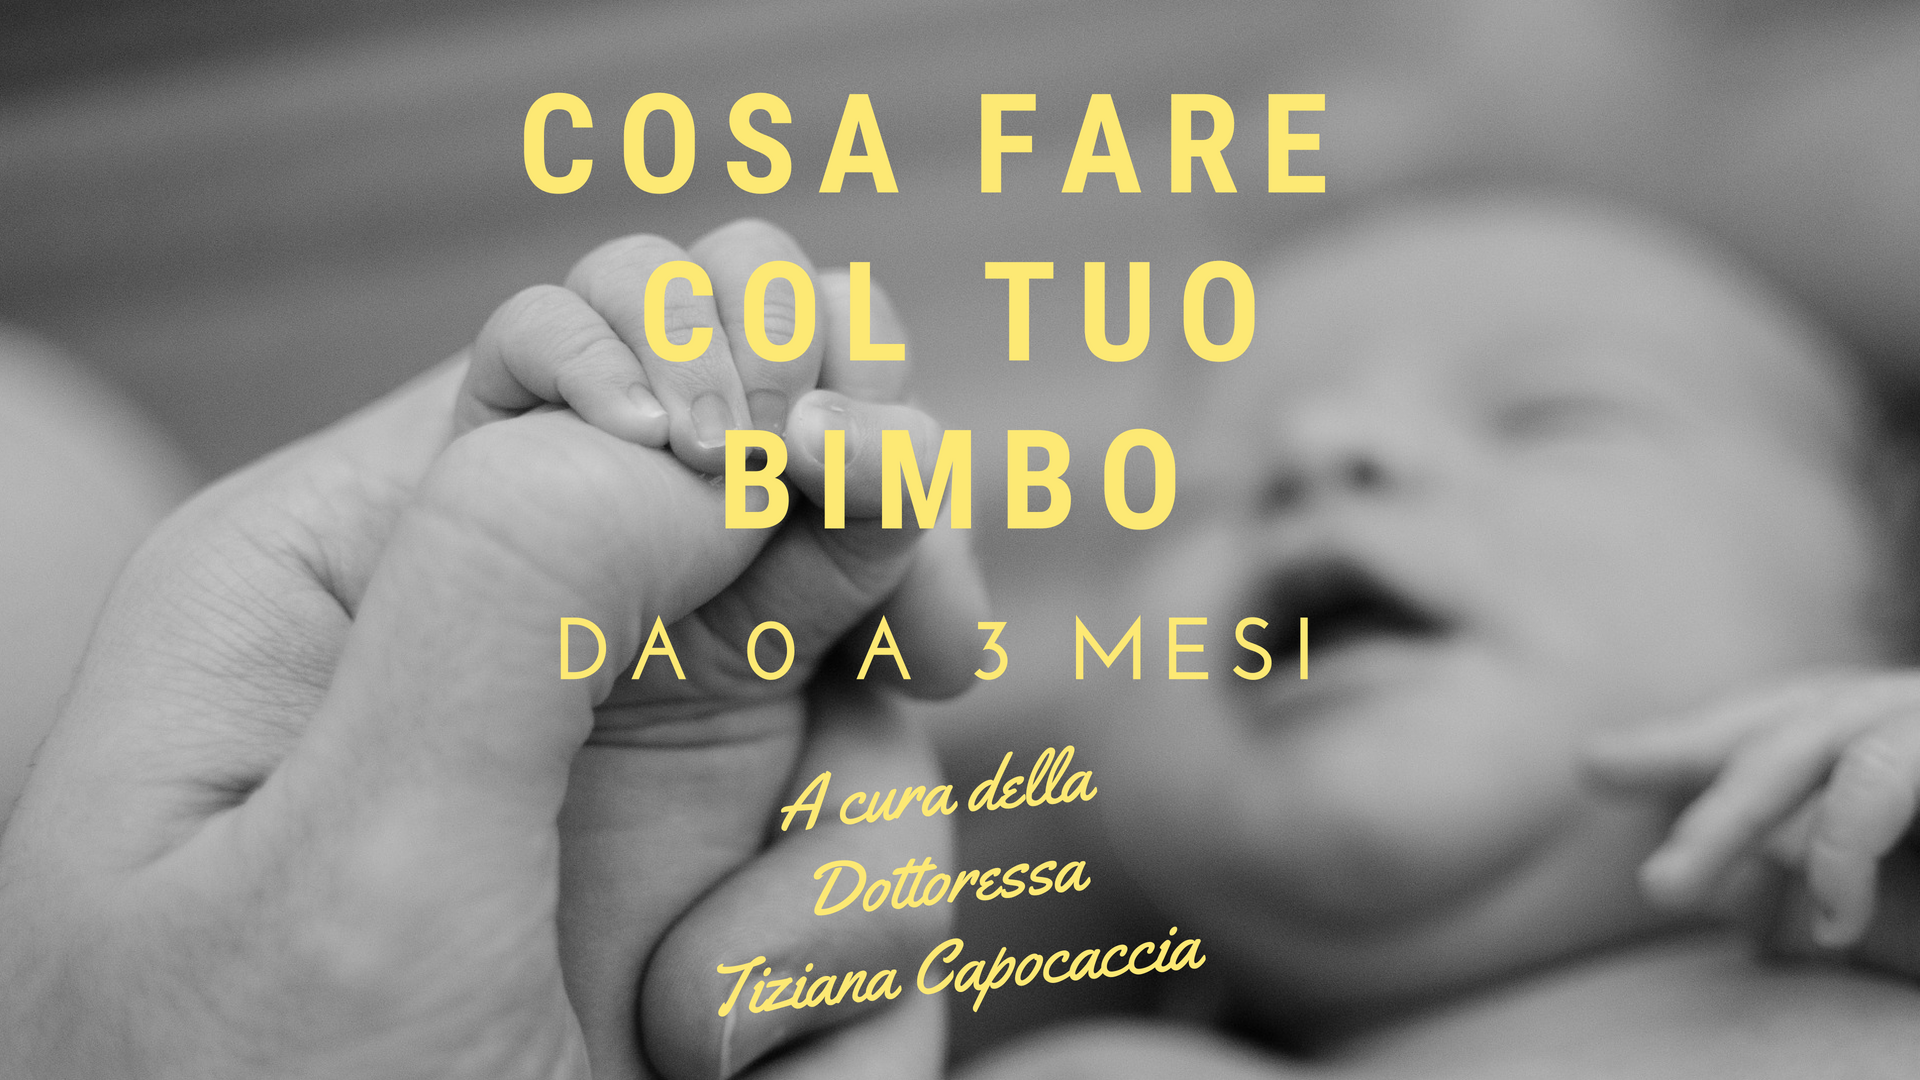 Cosa fare con un bambino da 0 a 3 mesi: i consigli della psicologa Tiziana  Capocaccia - Roma013